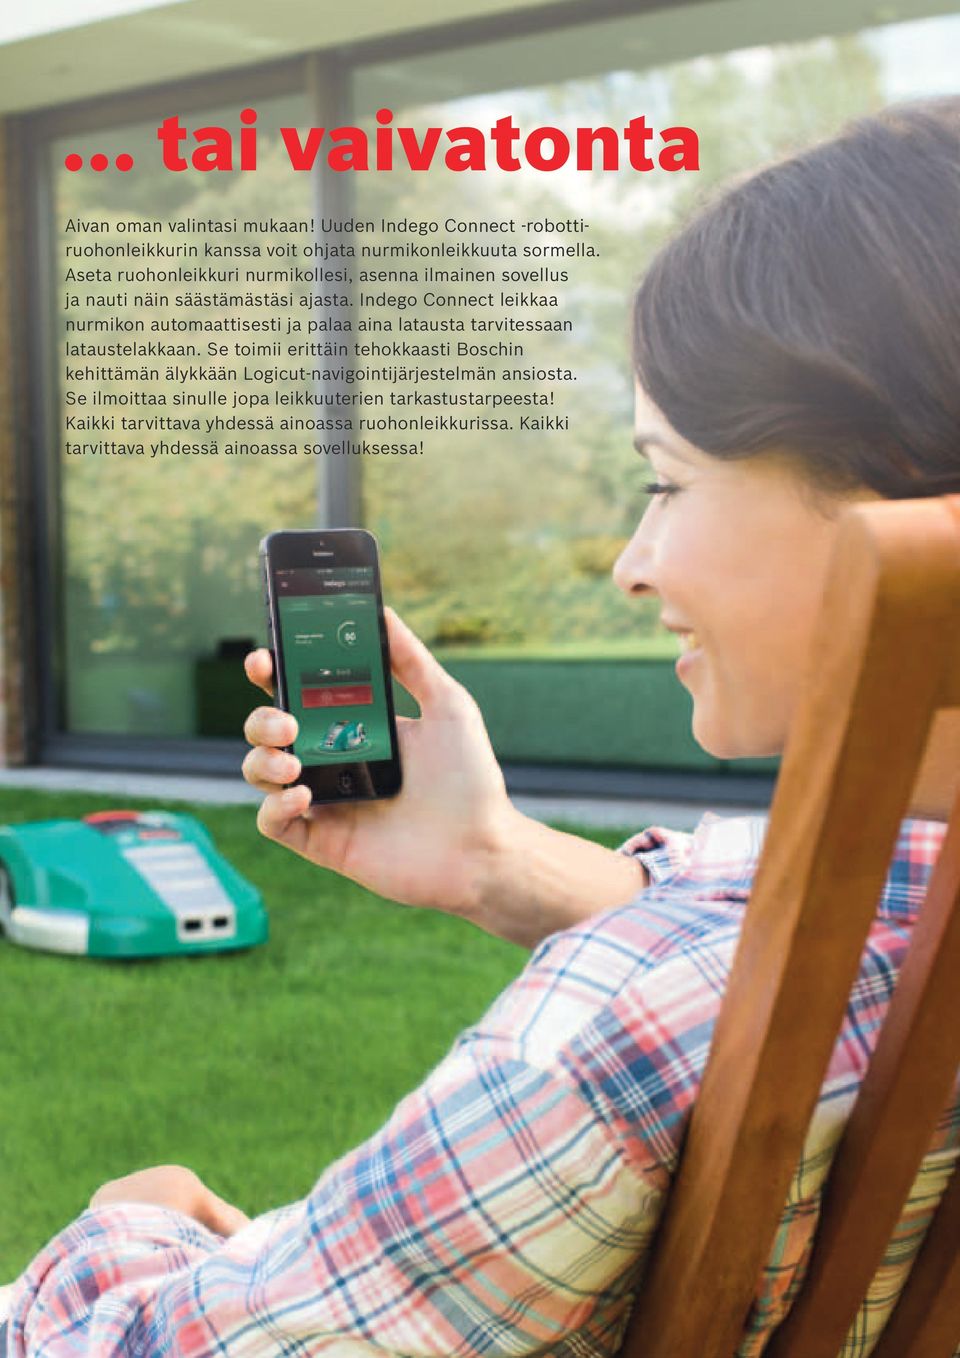 Indego Connect leikkaa nurmikon automaattisesti ja palaa aina latausta tarvitessaan lataustelakkaan.